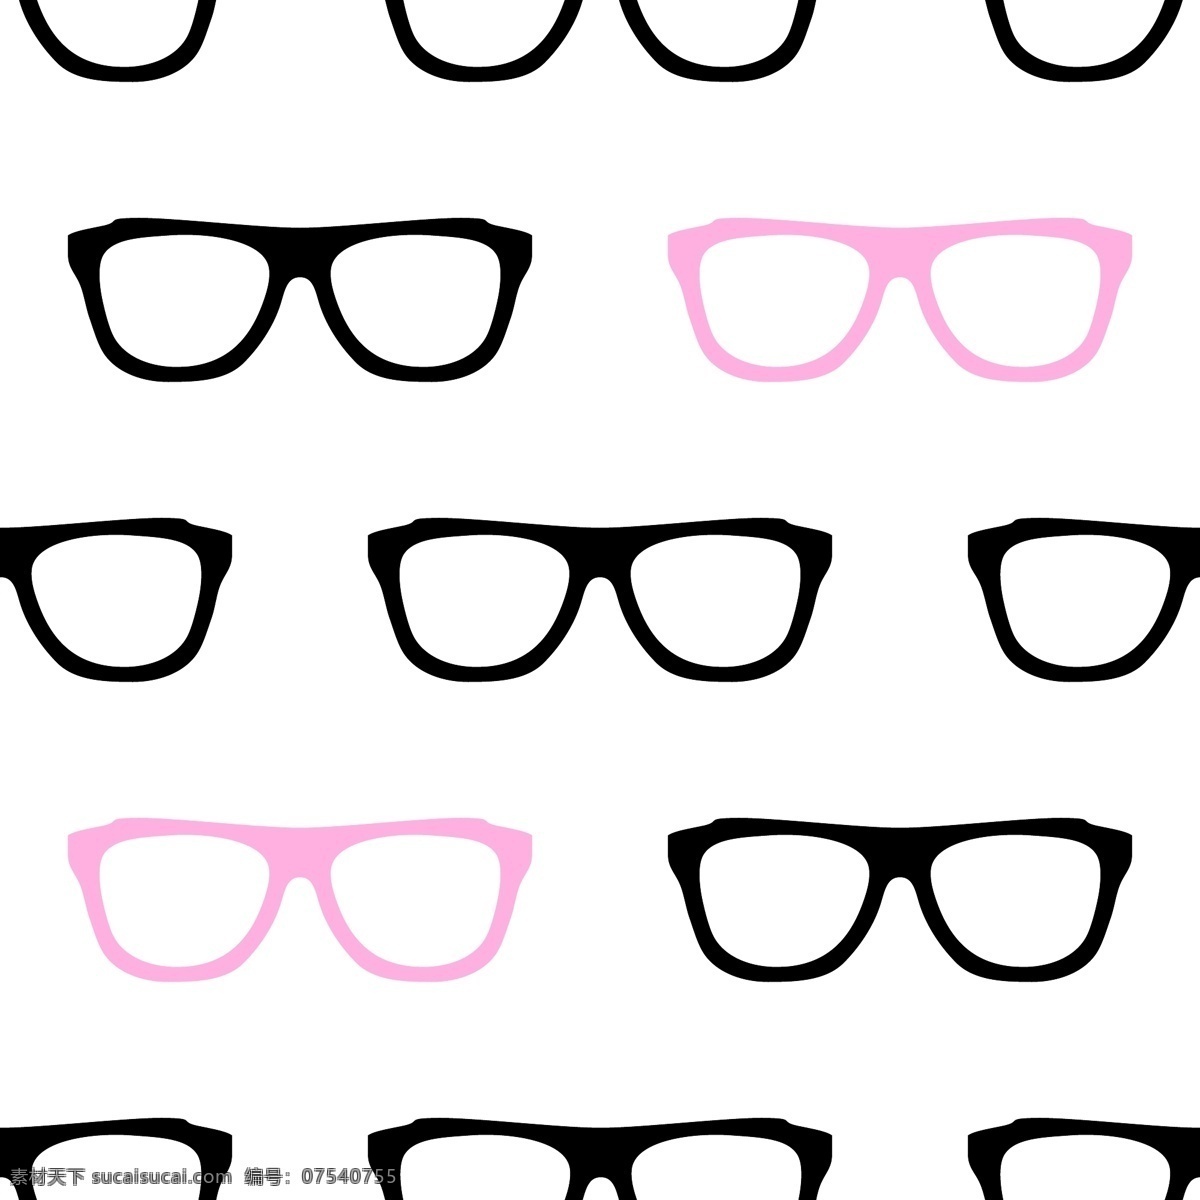 眼镜背景素材 背景 背景素材 广告背景 矢量素材 时尚背景 时尚花纹 花纹背景 眼镜